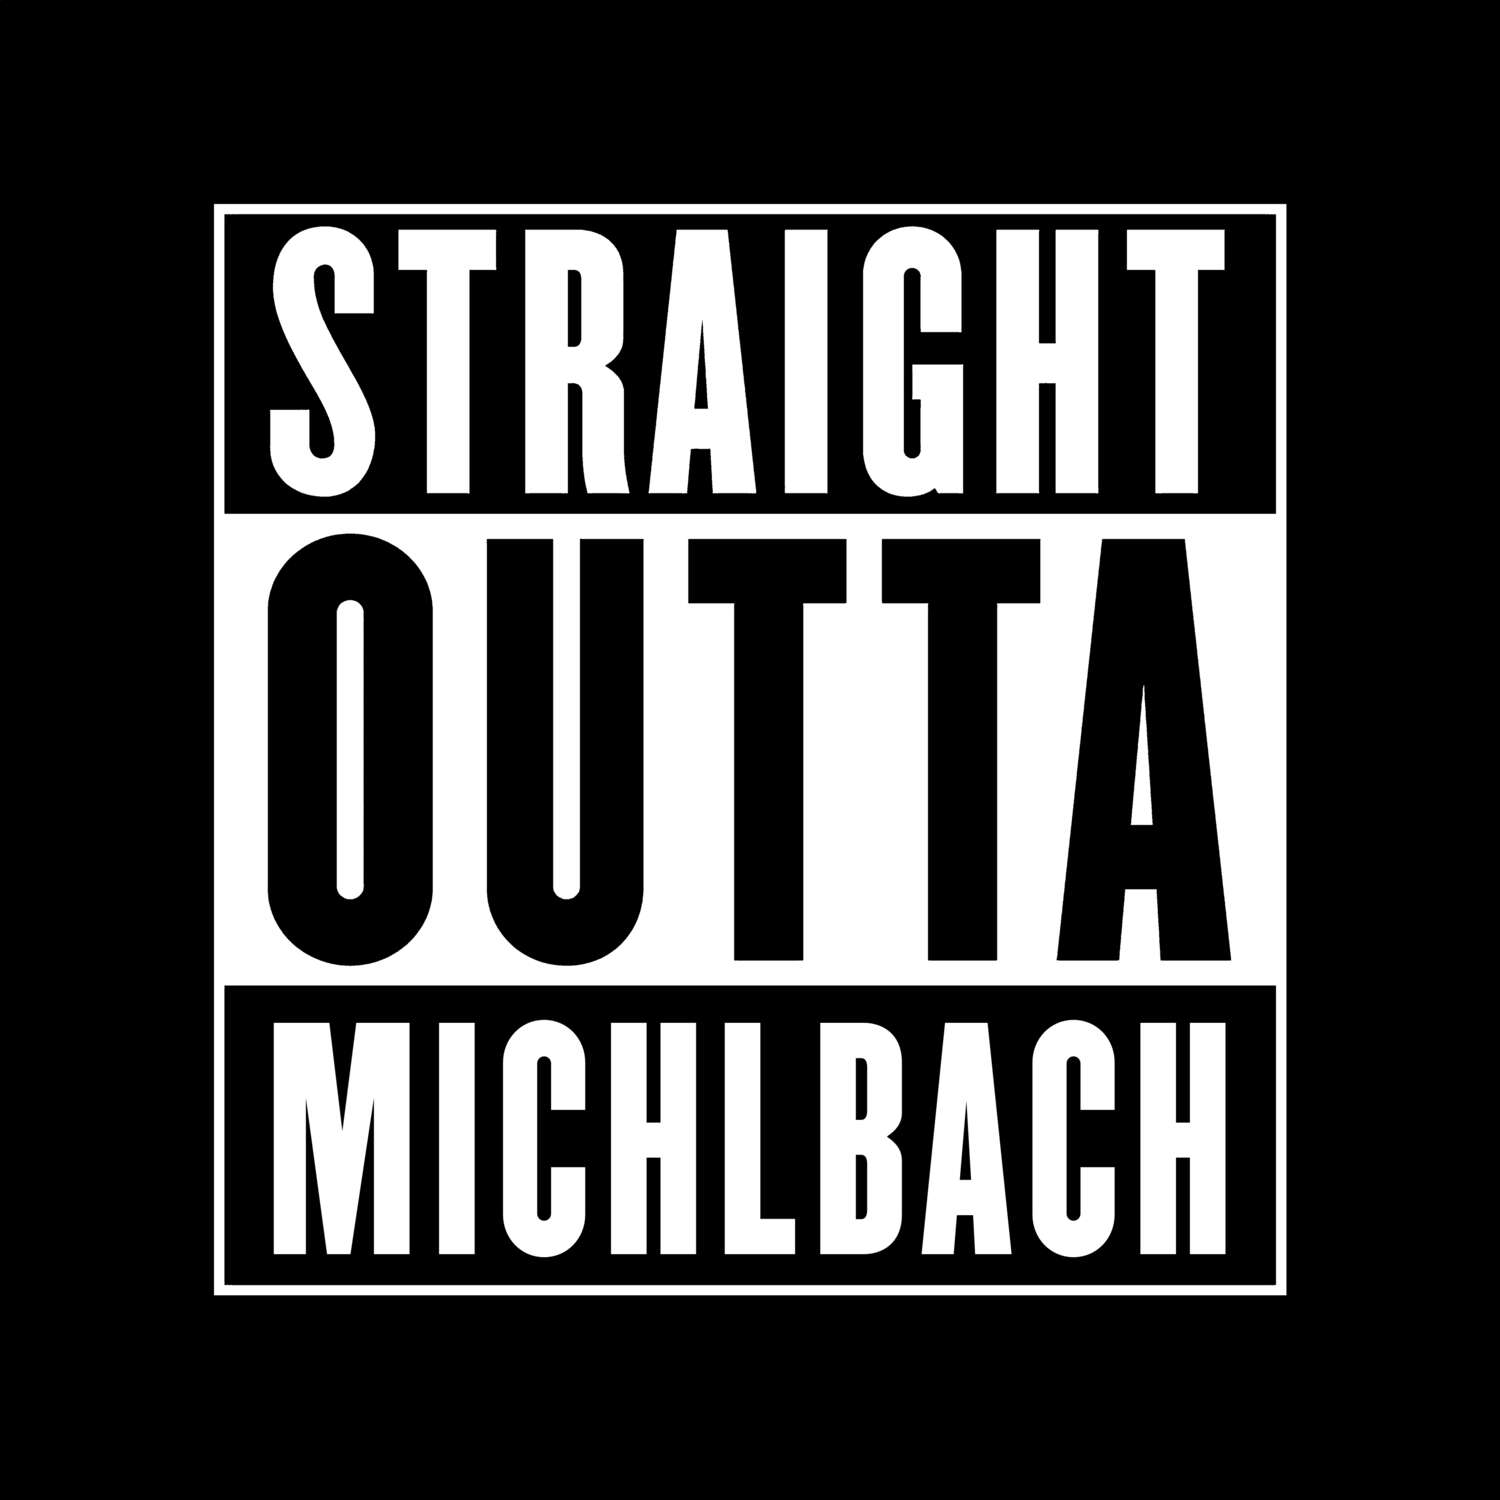 Michlbach T-Shirt »Straight Outta«